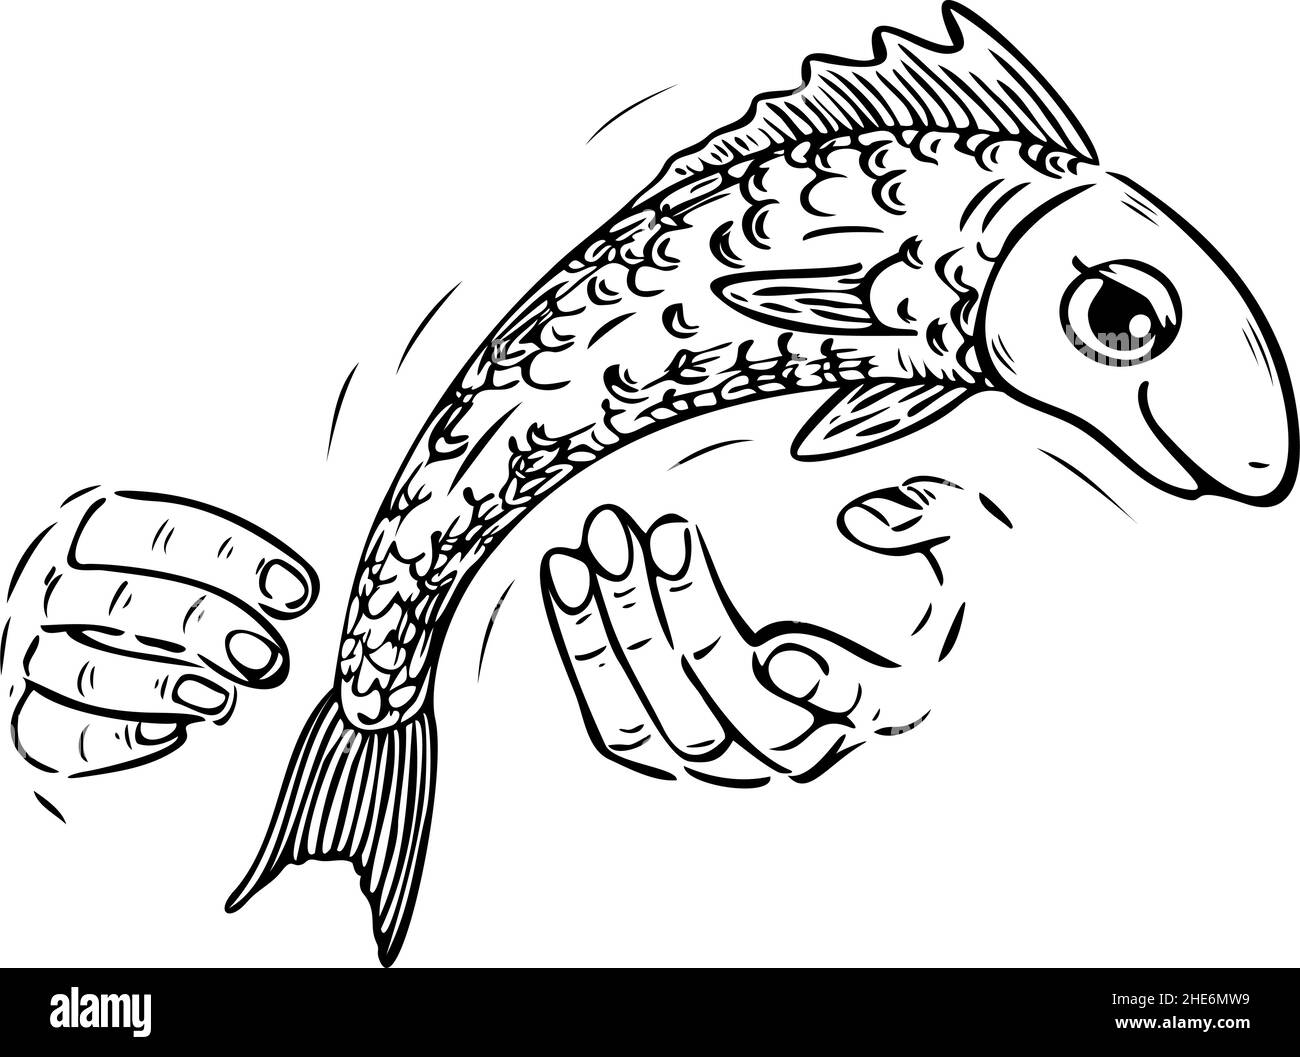 Illustration vectorielle avec des poissons qui glissent hors des mains des pêcheurs.Illustration noire et blanche du poisson qui s'échappe. Illustration de Vecteur